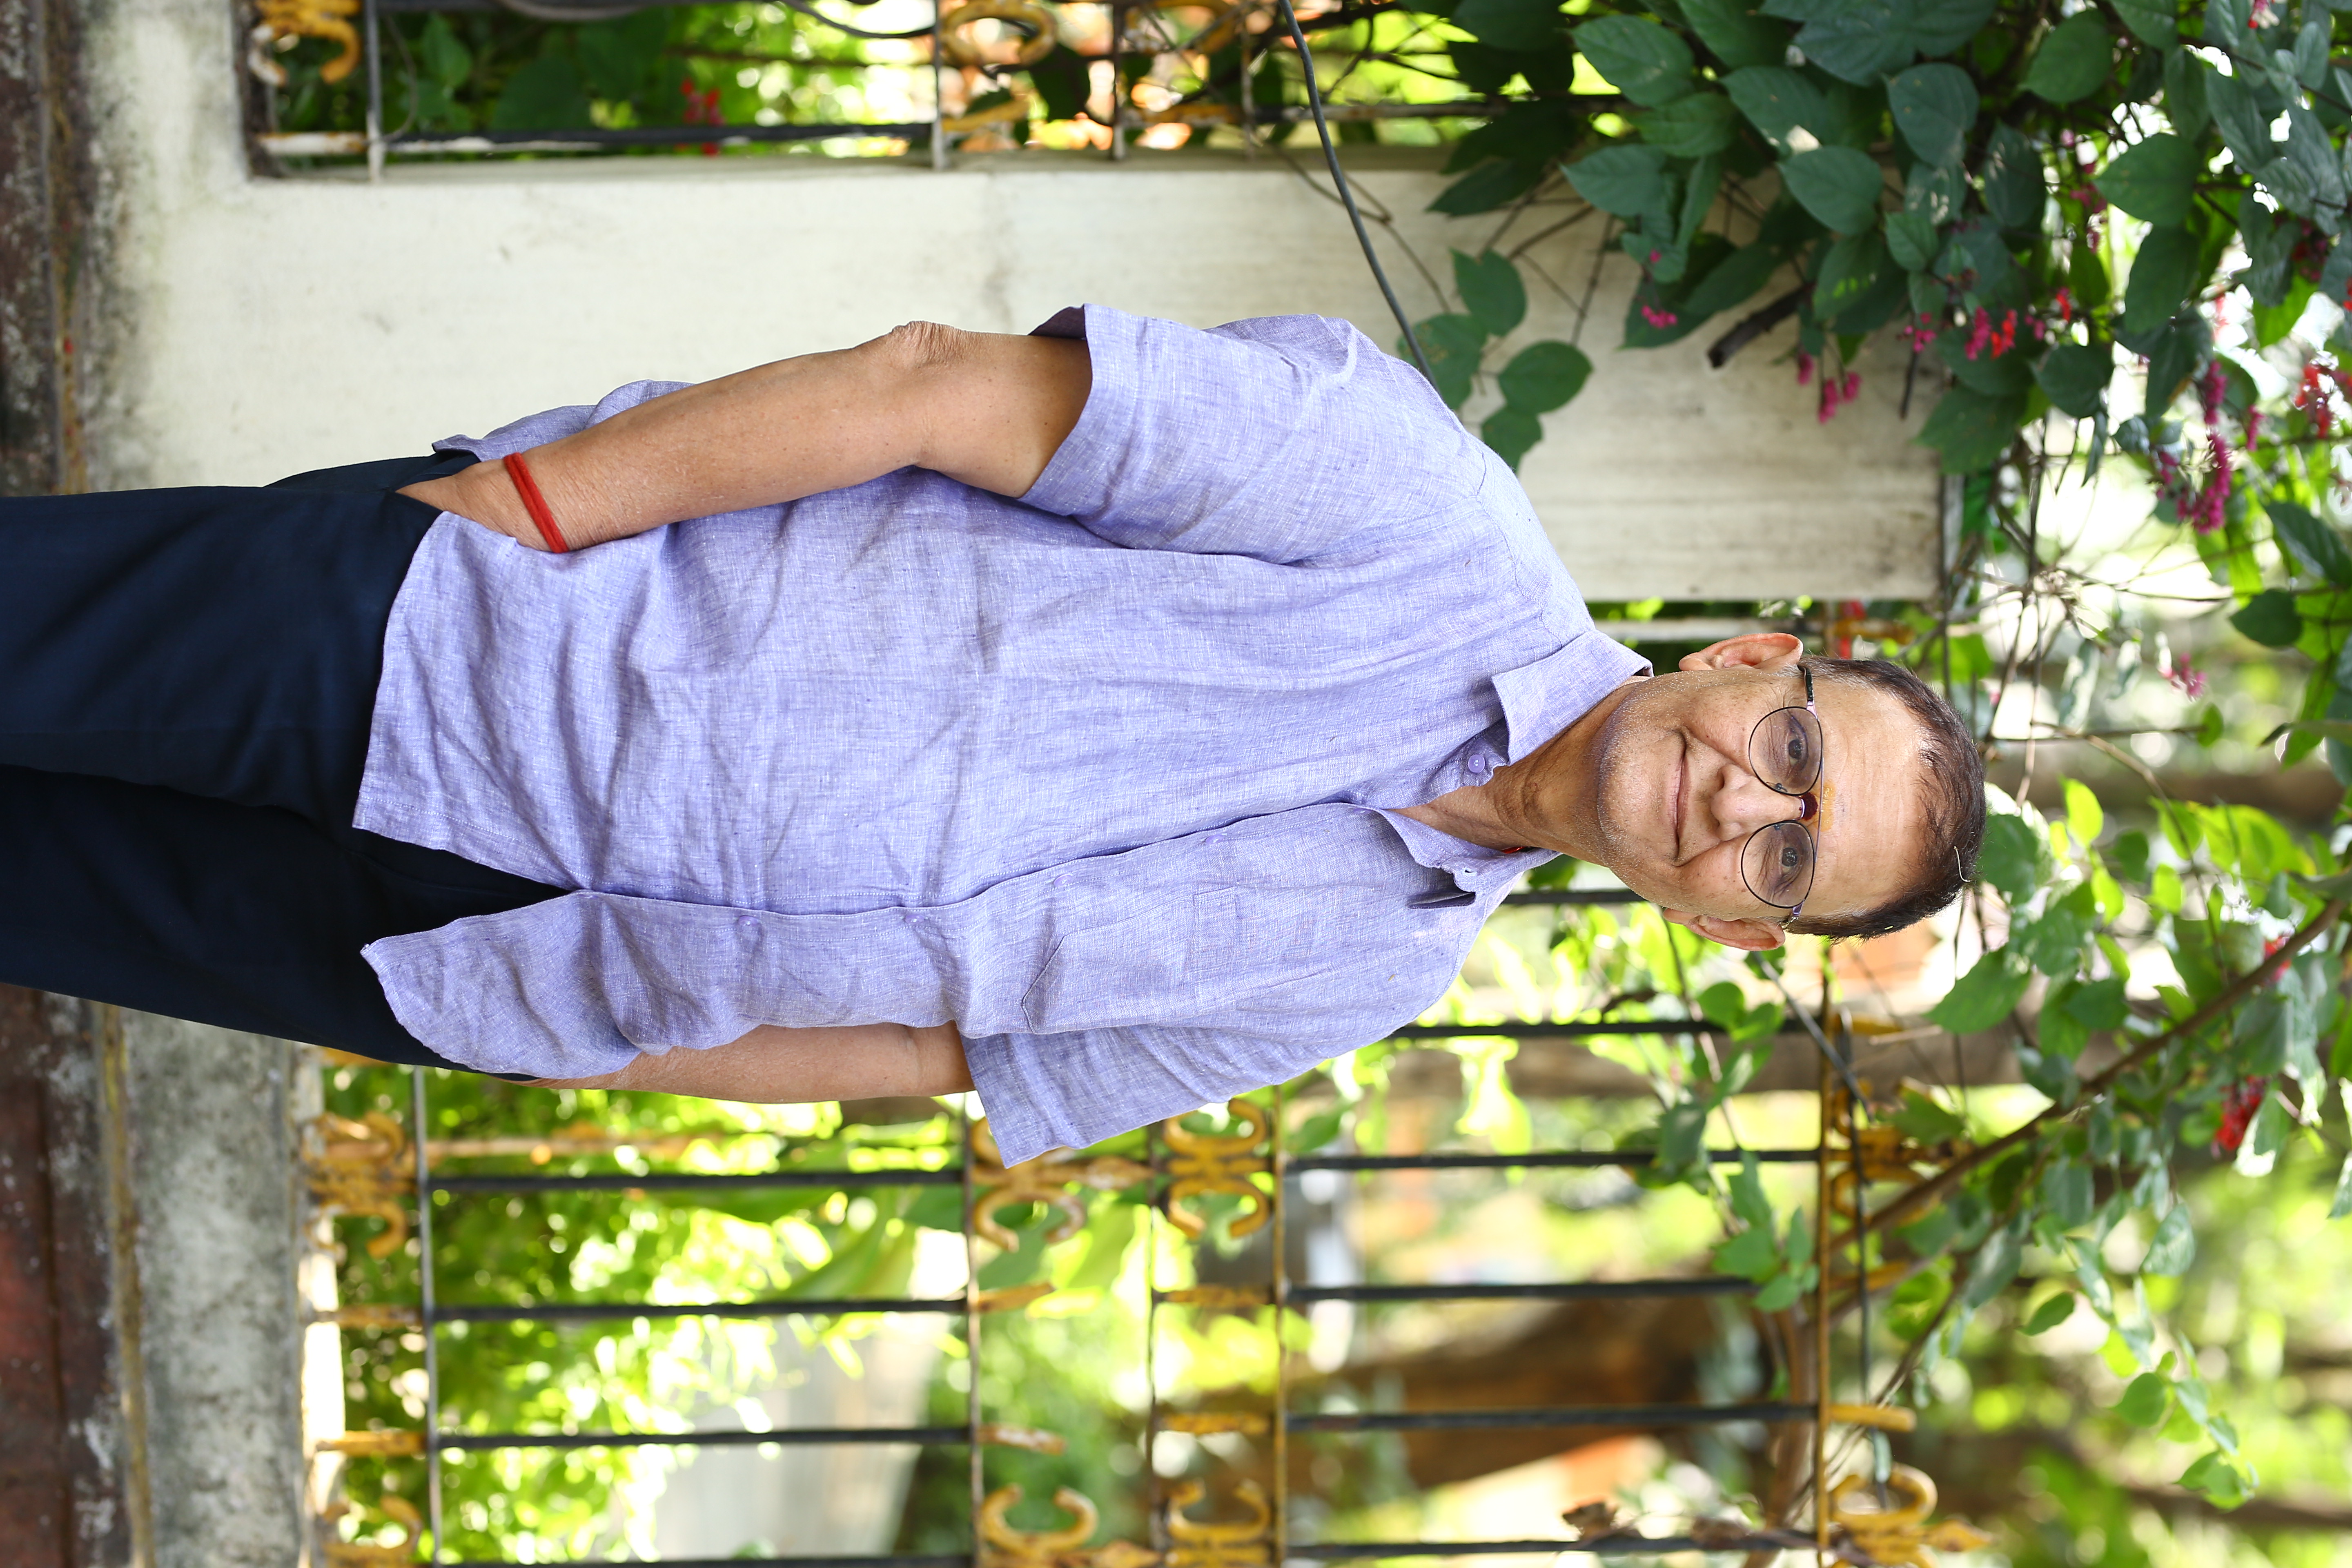 தயாரிப்பாளர் சிவலெங்க கிருஷ்ண பிரசாத்: ‘’யசோதா’ படத்தின் கதை கேட்ட 45 நிமிடங்களிலேயே சமந்தா நடிக்க ஒத்துக் கொண்டார்”